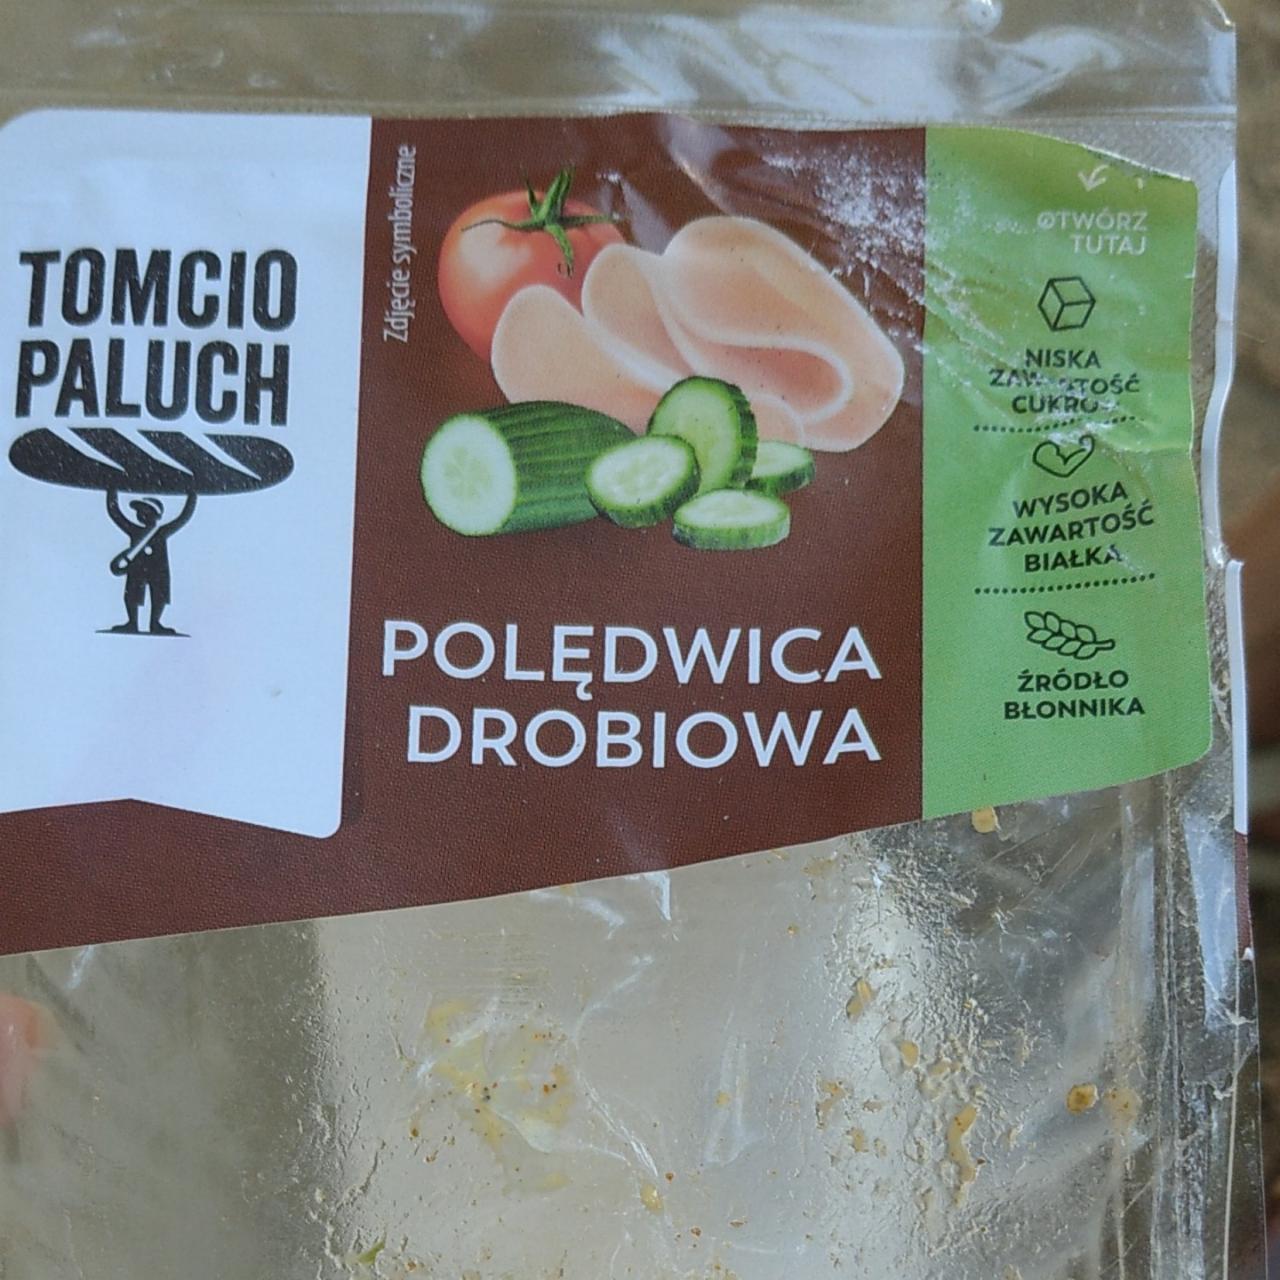 Фото - сендвич с куриной ветчиной Tomcio paluch